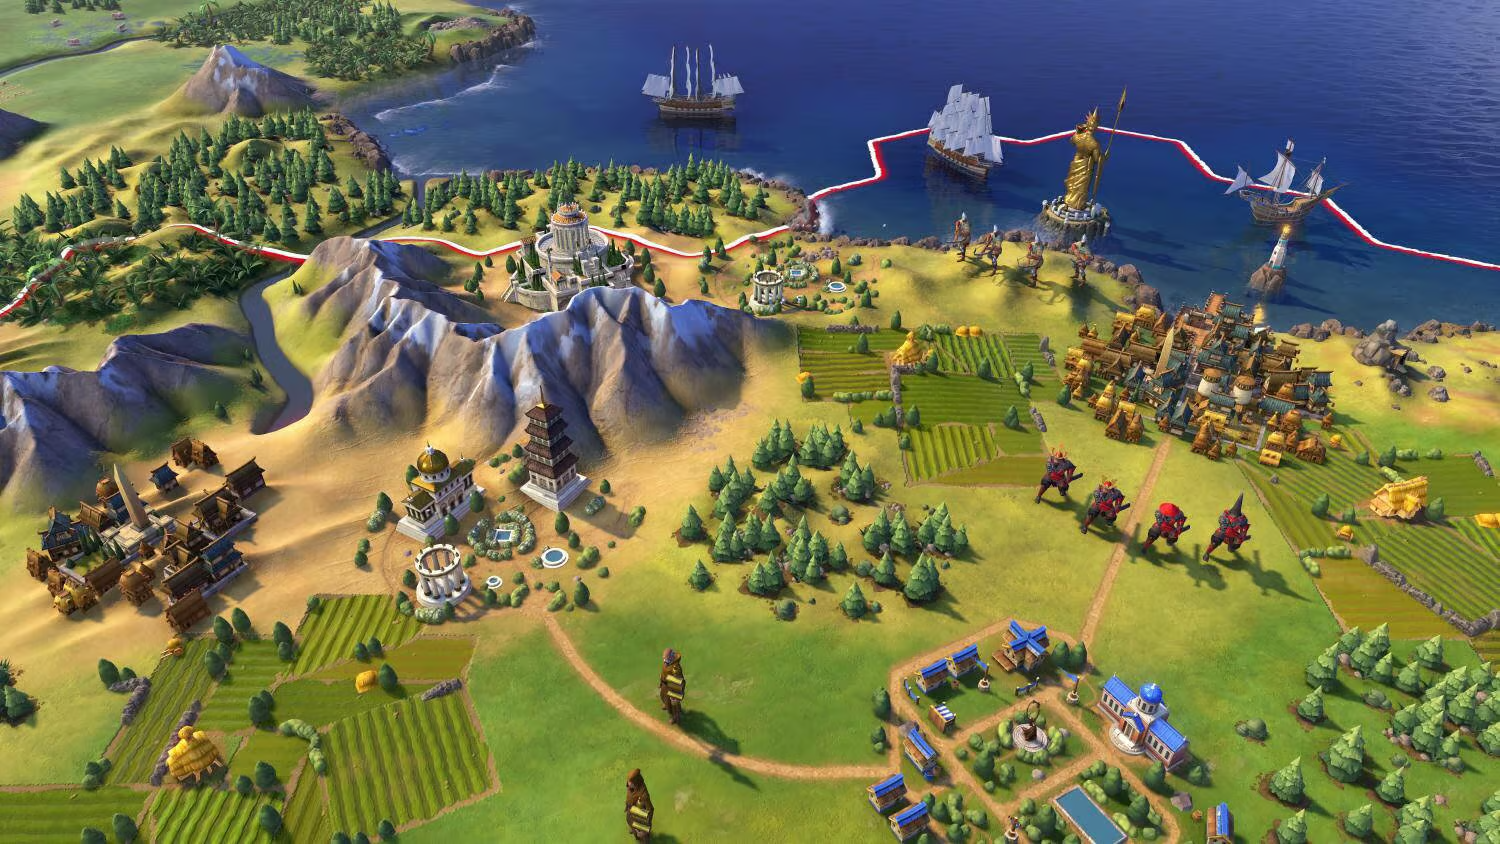 🔥 Sid Meier´s Civilization VI 🔥 Epic Games | PC